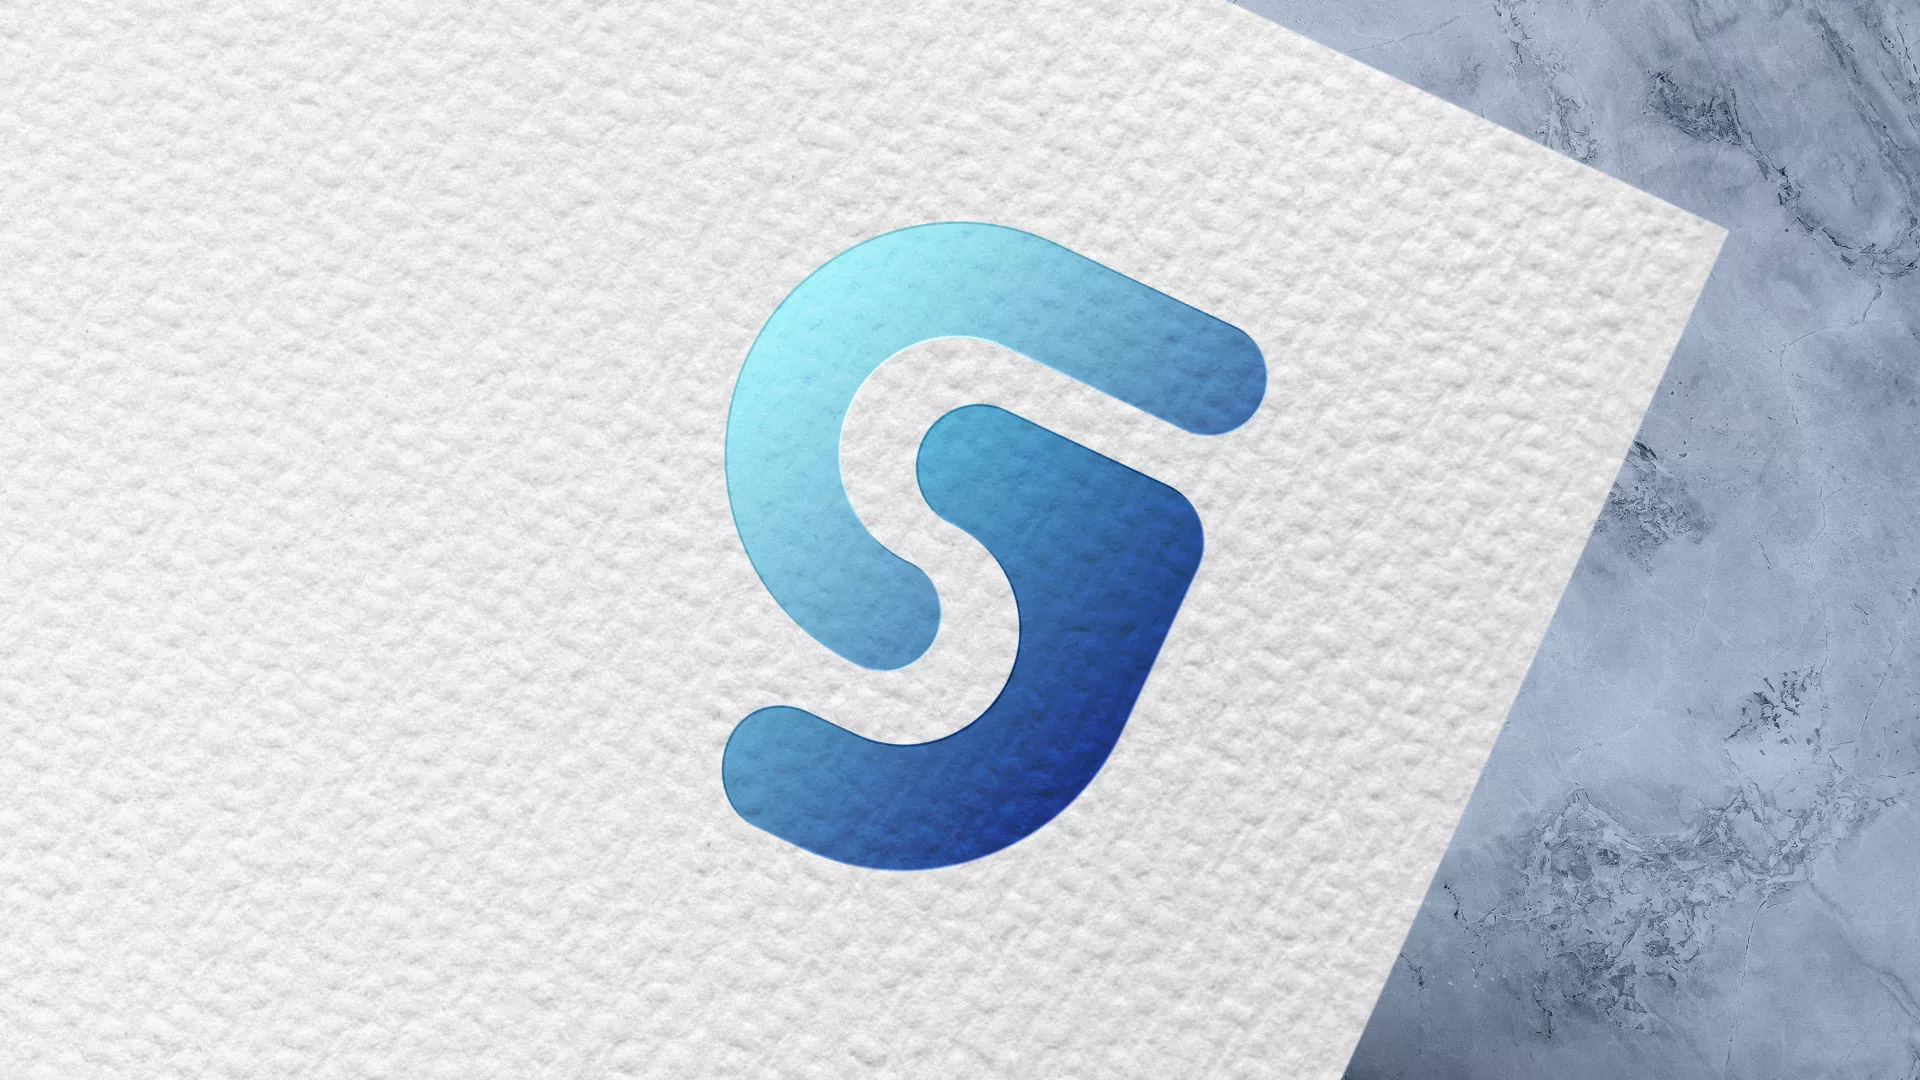 Разработка логотипа газовой компании «Сервис газ» в Суворове